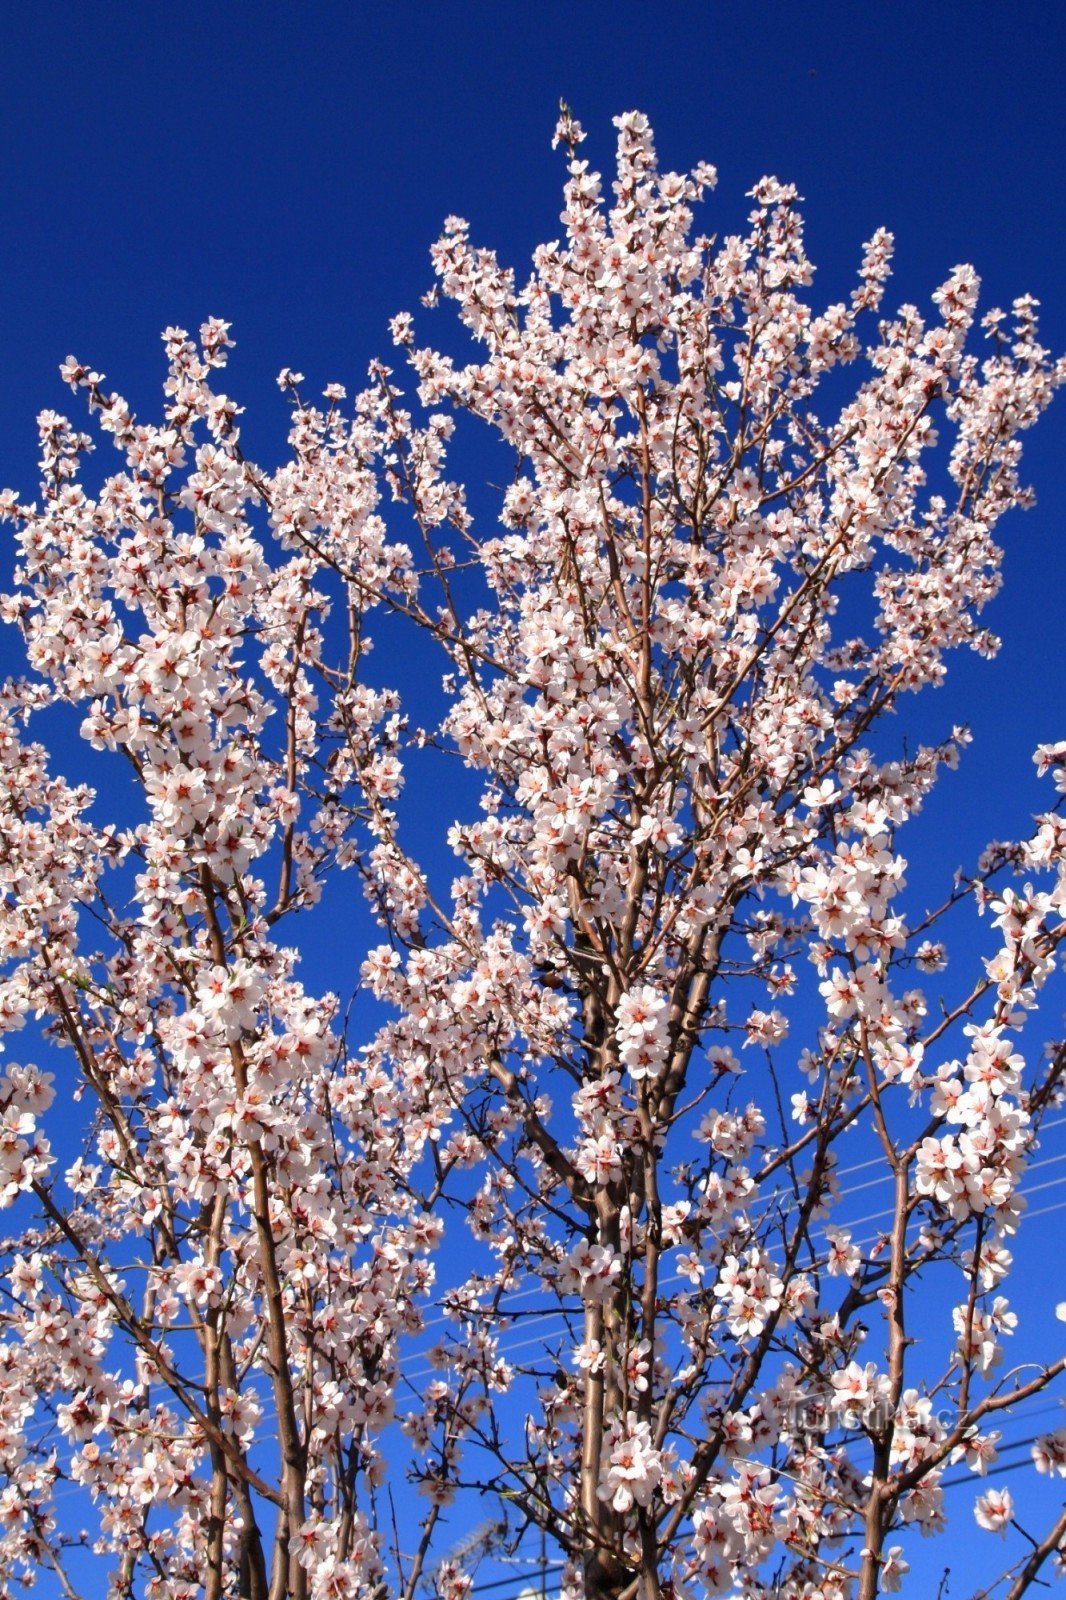 Krošnja badema u punom cvatu - 25. ožujka